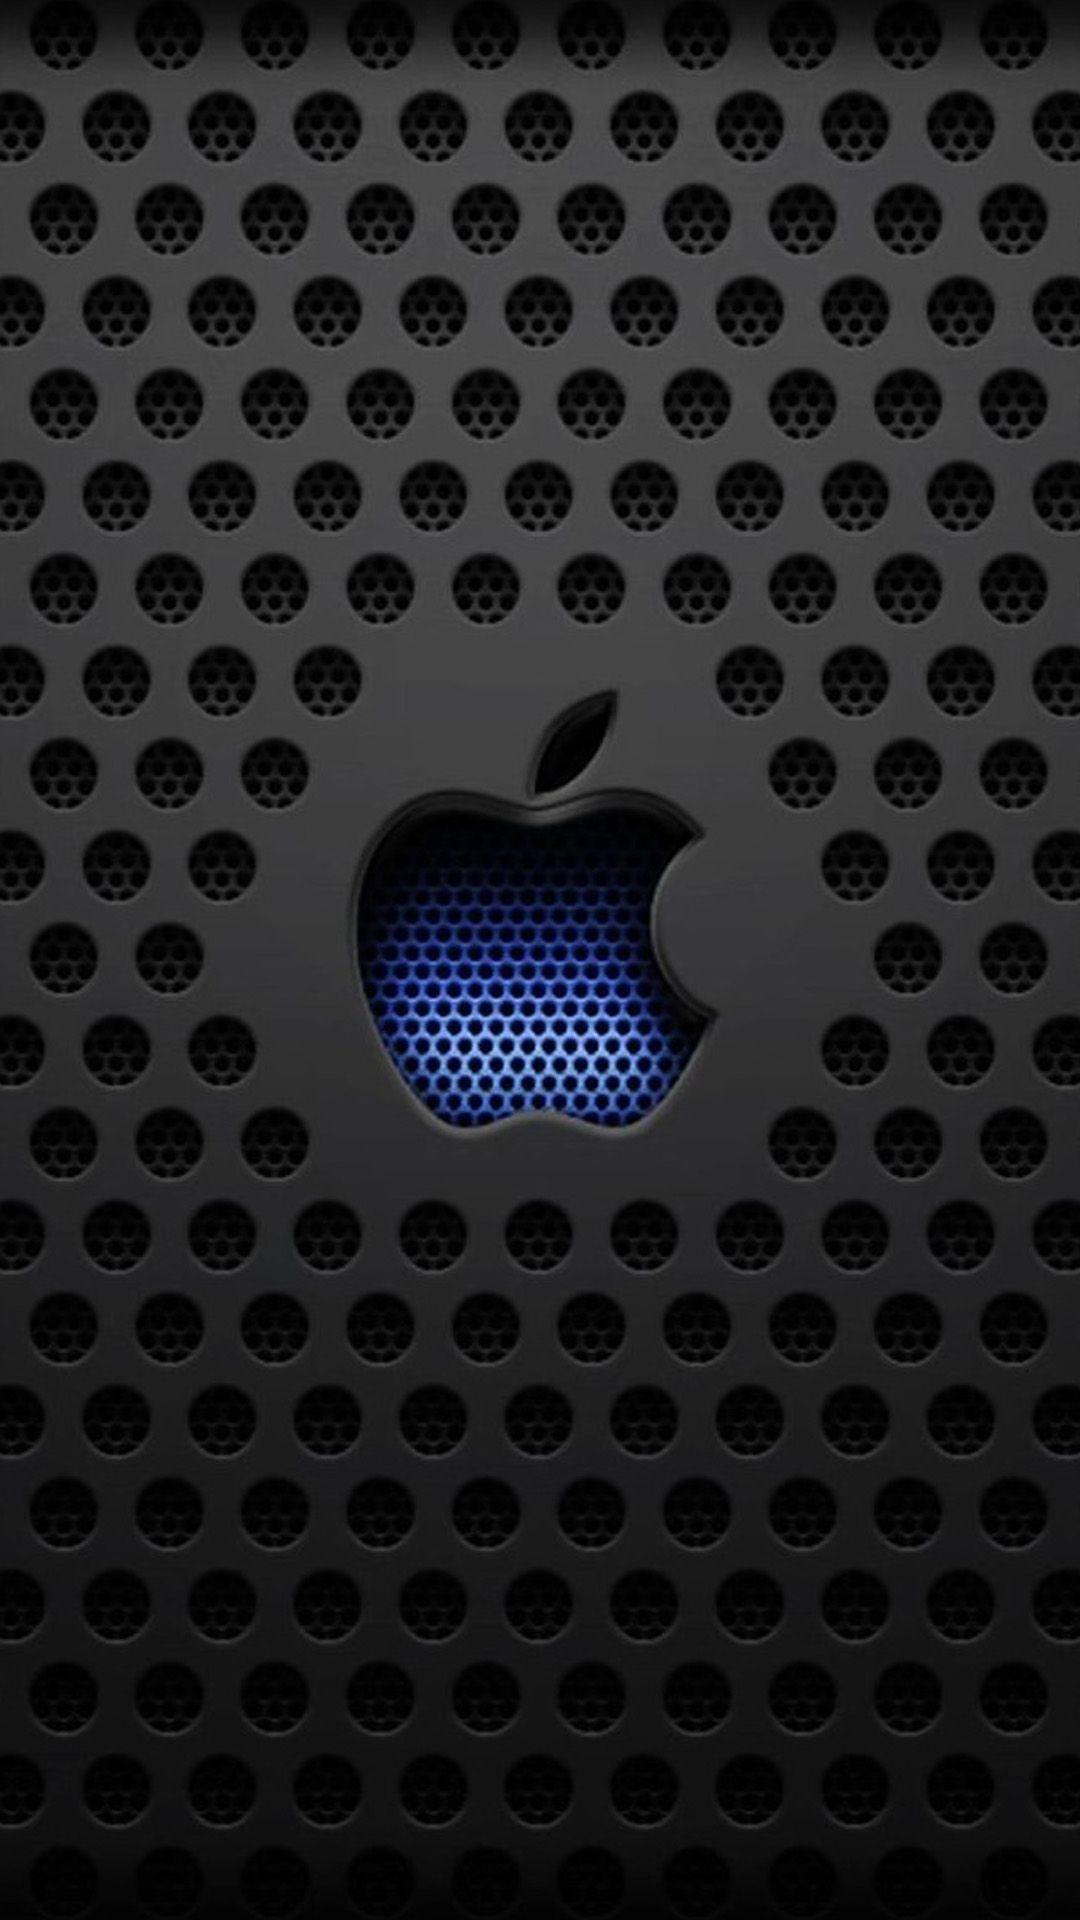 1080x1920 Mohamed Salama trên nền Điện thoại năm 2019. Logo Apple